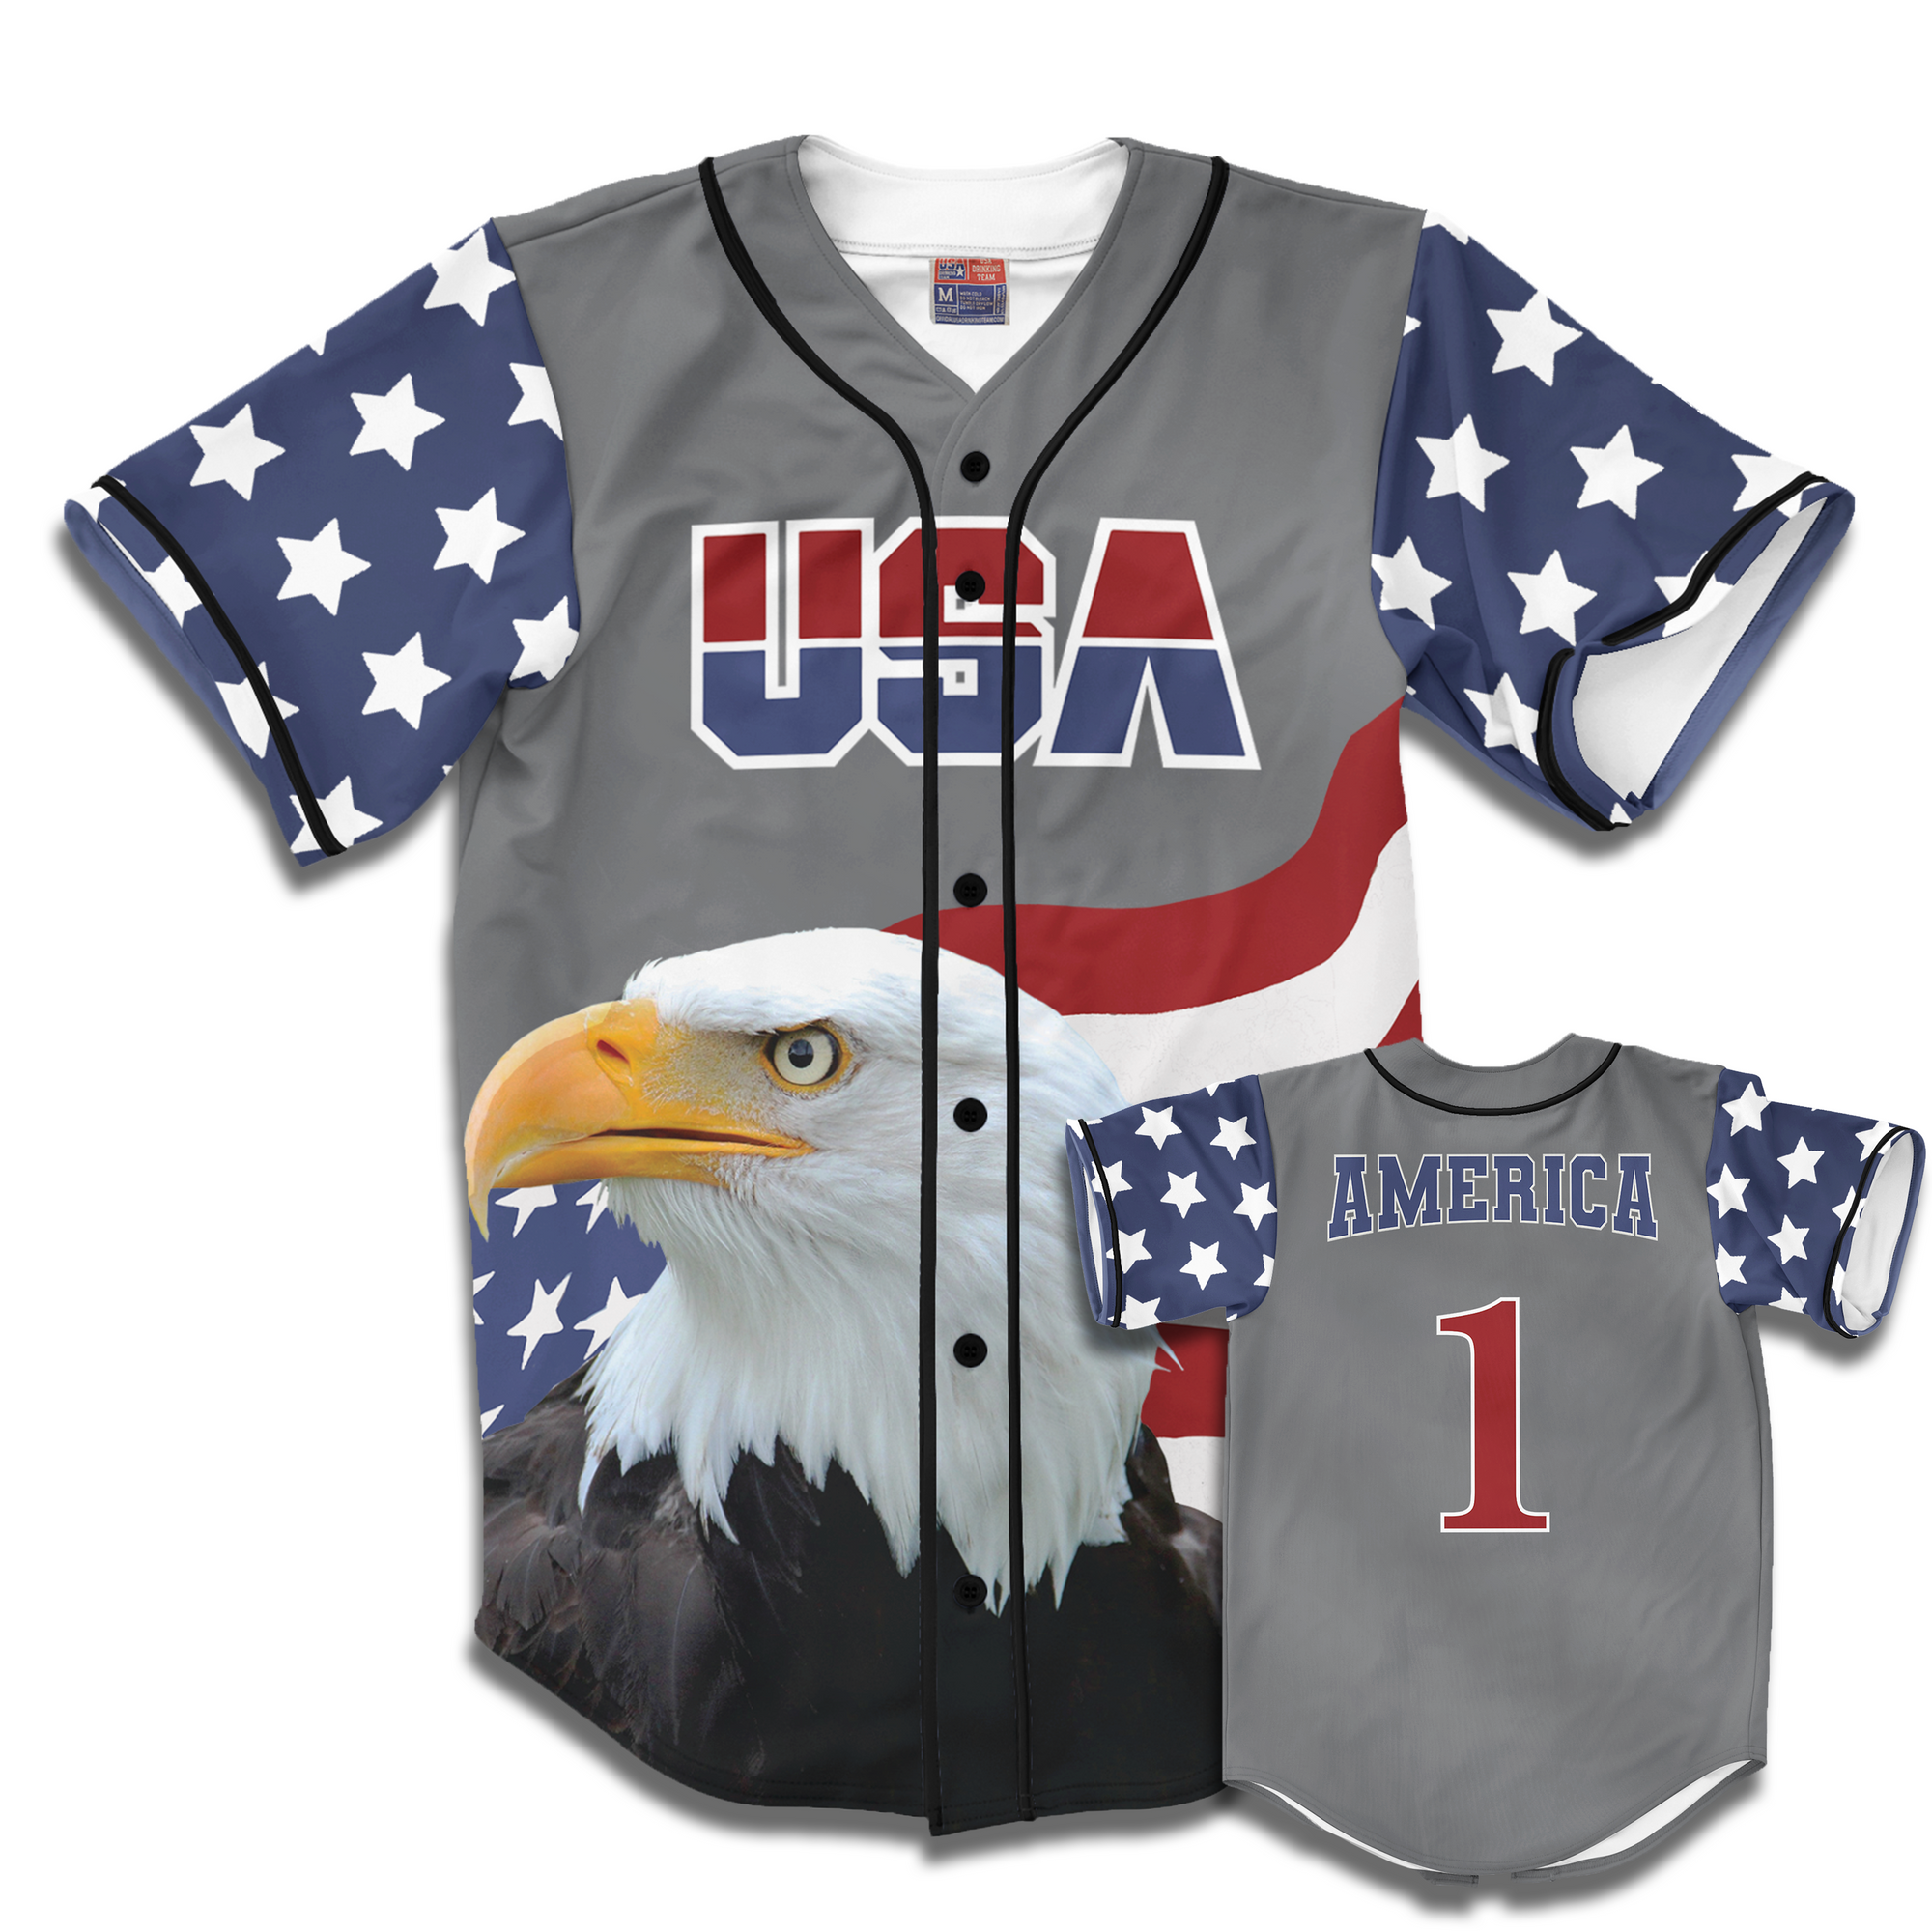 USA America 1 Statue Of Liberty Baseball Jersey Size 2XL (Fits XL